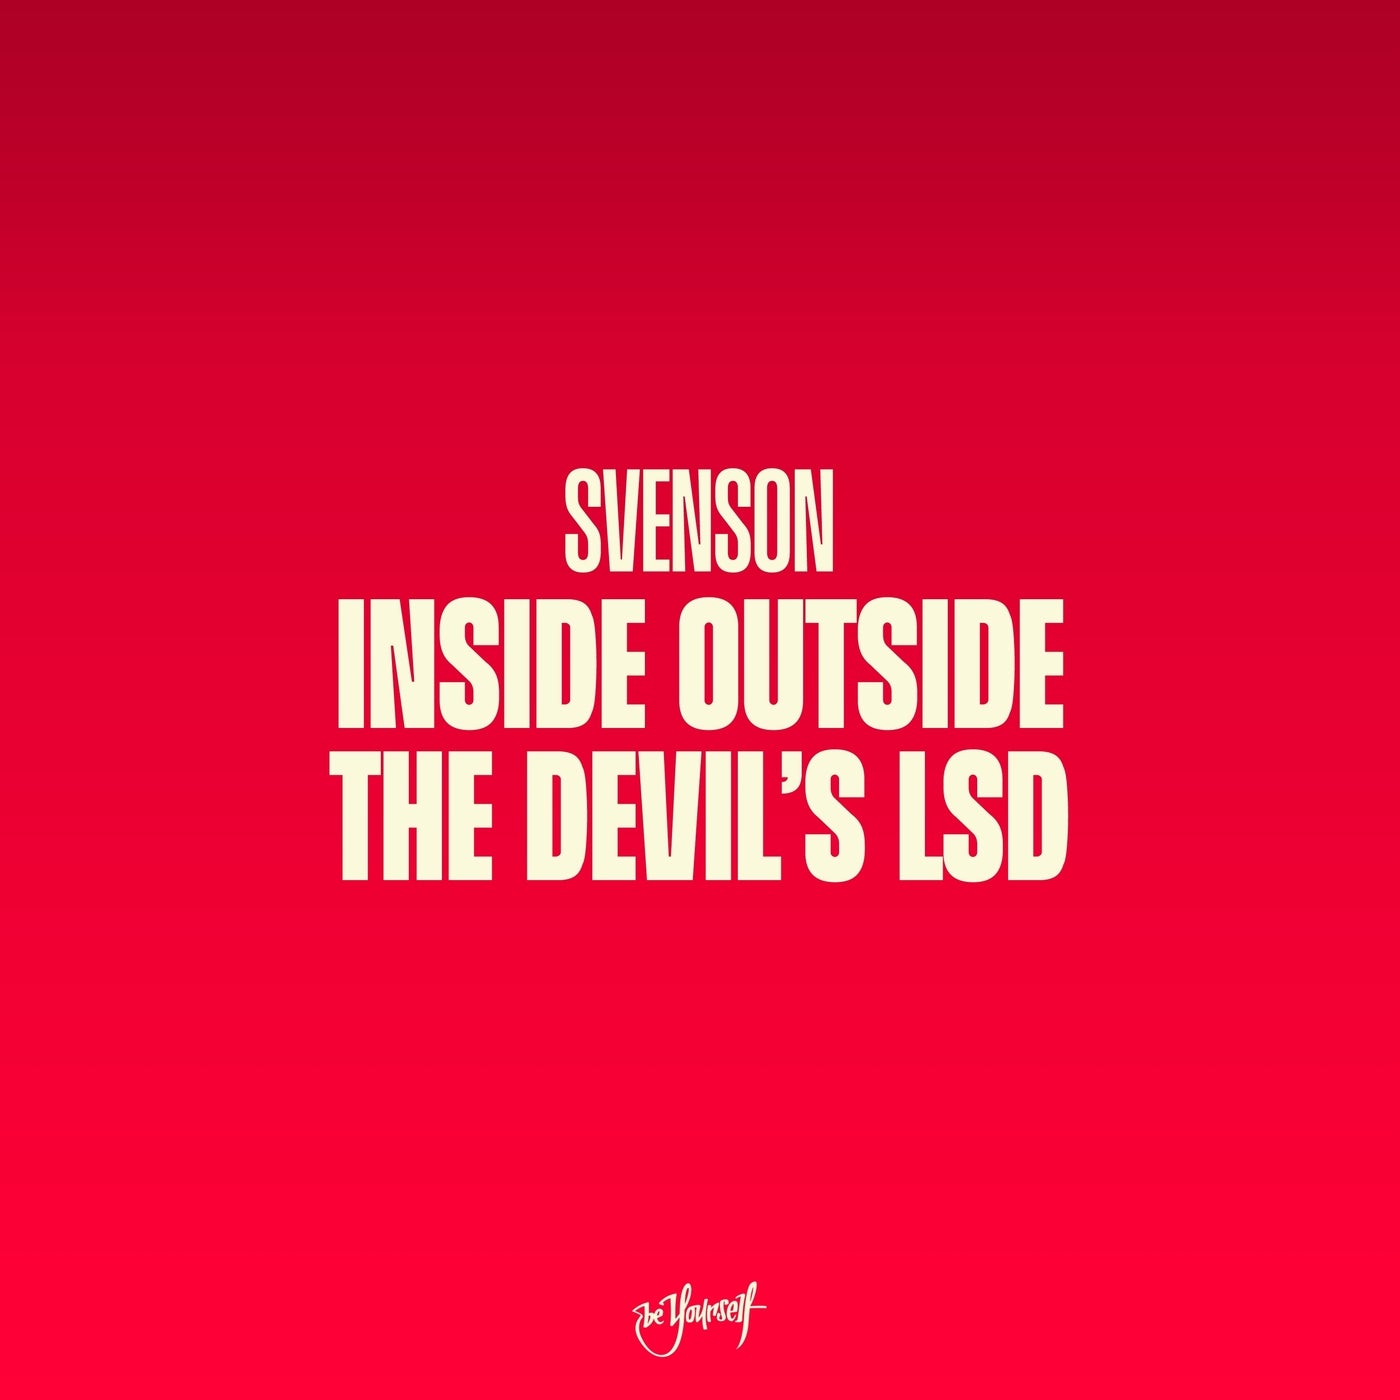 Inside Outside / The Devil's LSD